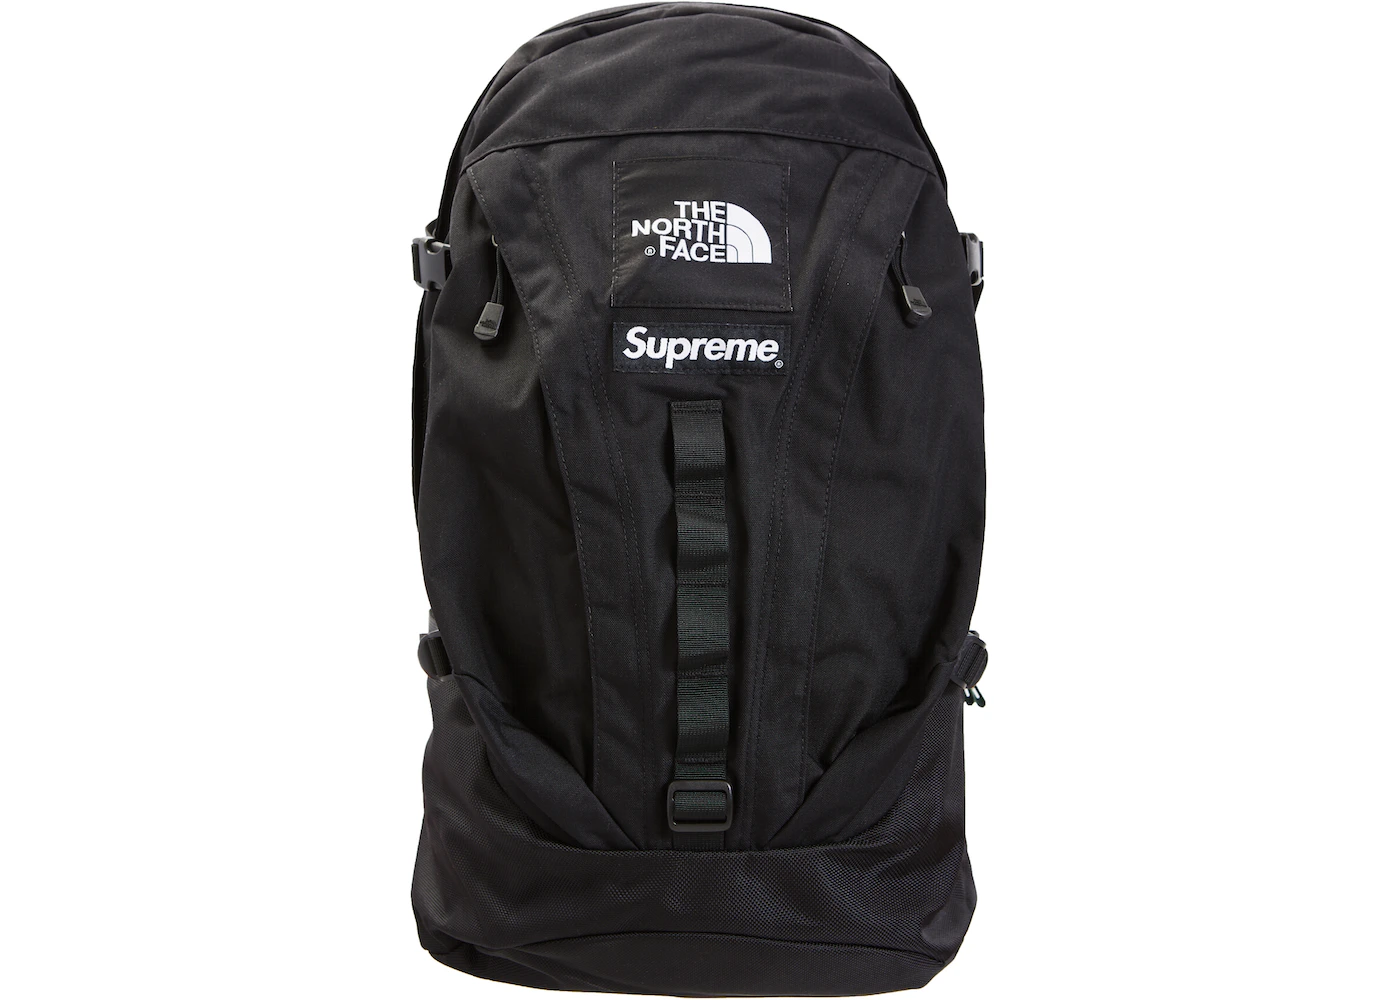 North face supreme backpack: BusinessHAB.com